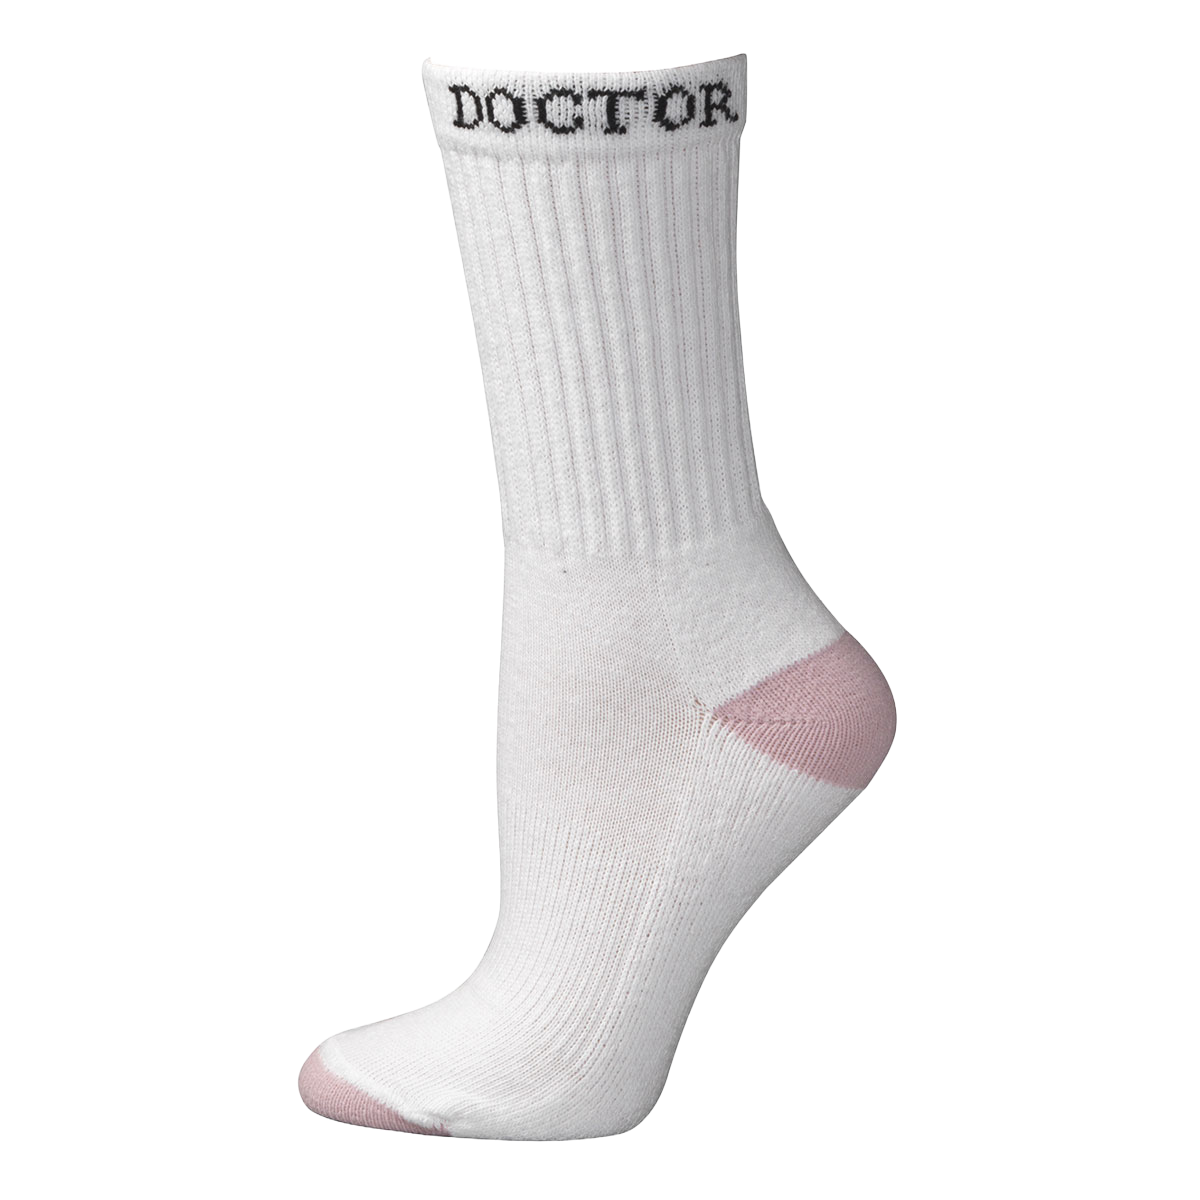 Boot Doctor Ladies Crew Style White Socks 0496805